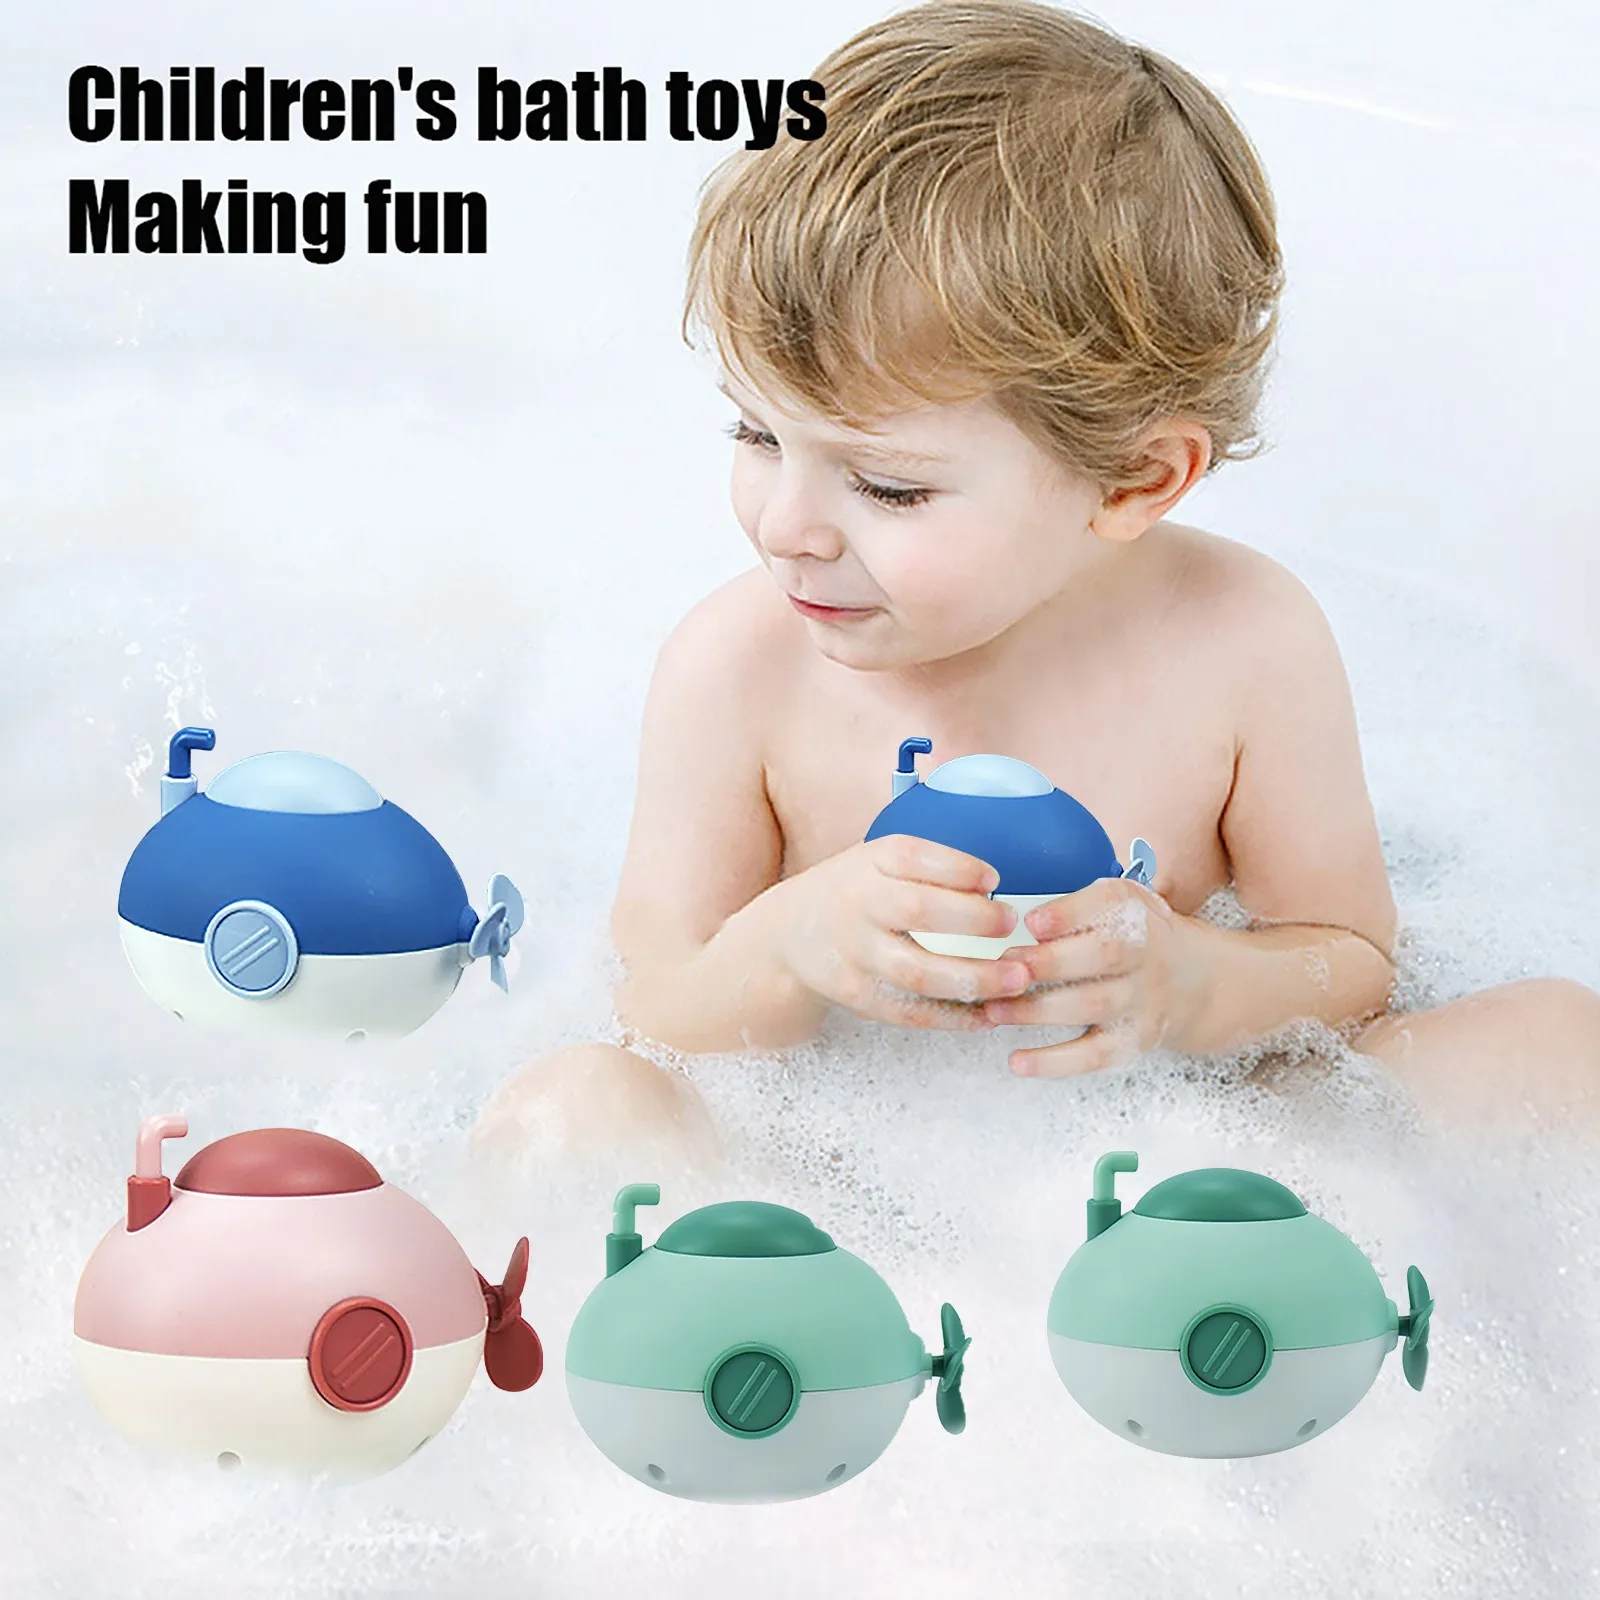 

1 предмет купальный субмарина игрушки для детей водные игрушки для ванной для принятия солнечных ванн, игрушка для бассейна Симпатичные зав...